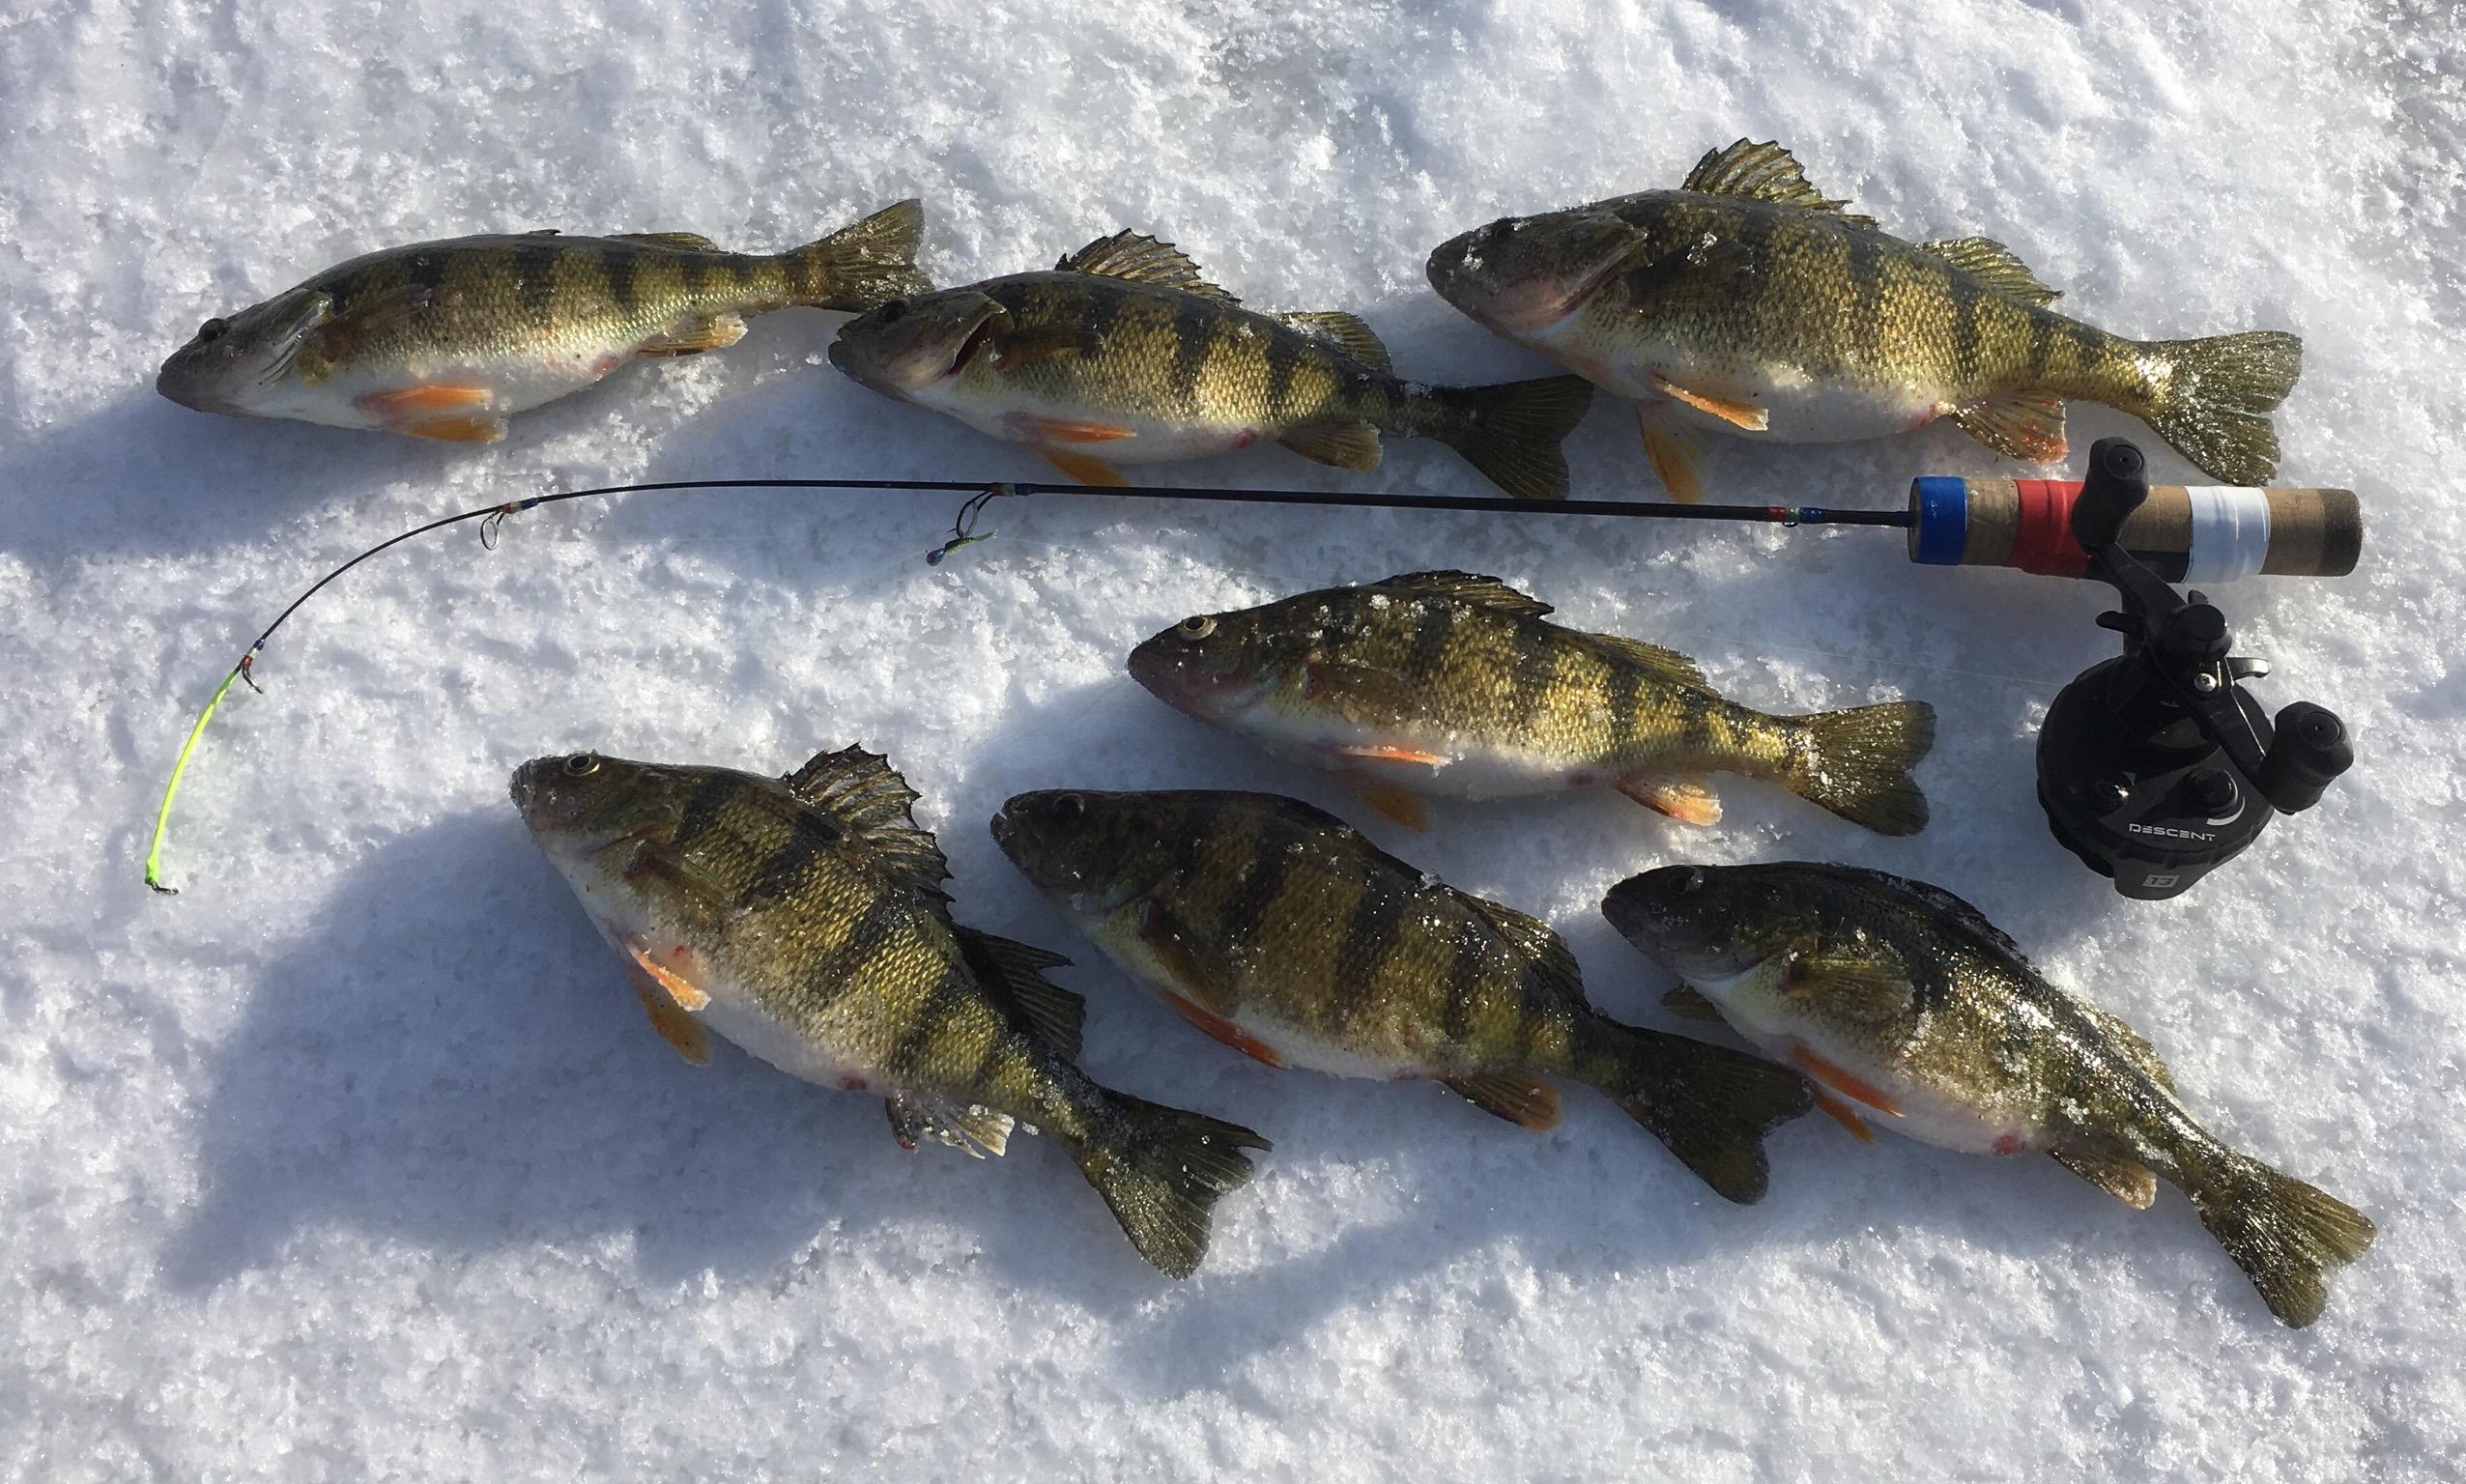 Perch Photos - Walleye Fishing-Perch - Outdoor Minnesota Fishing